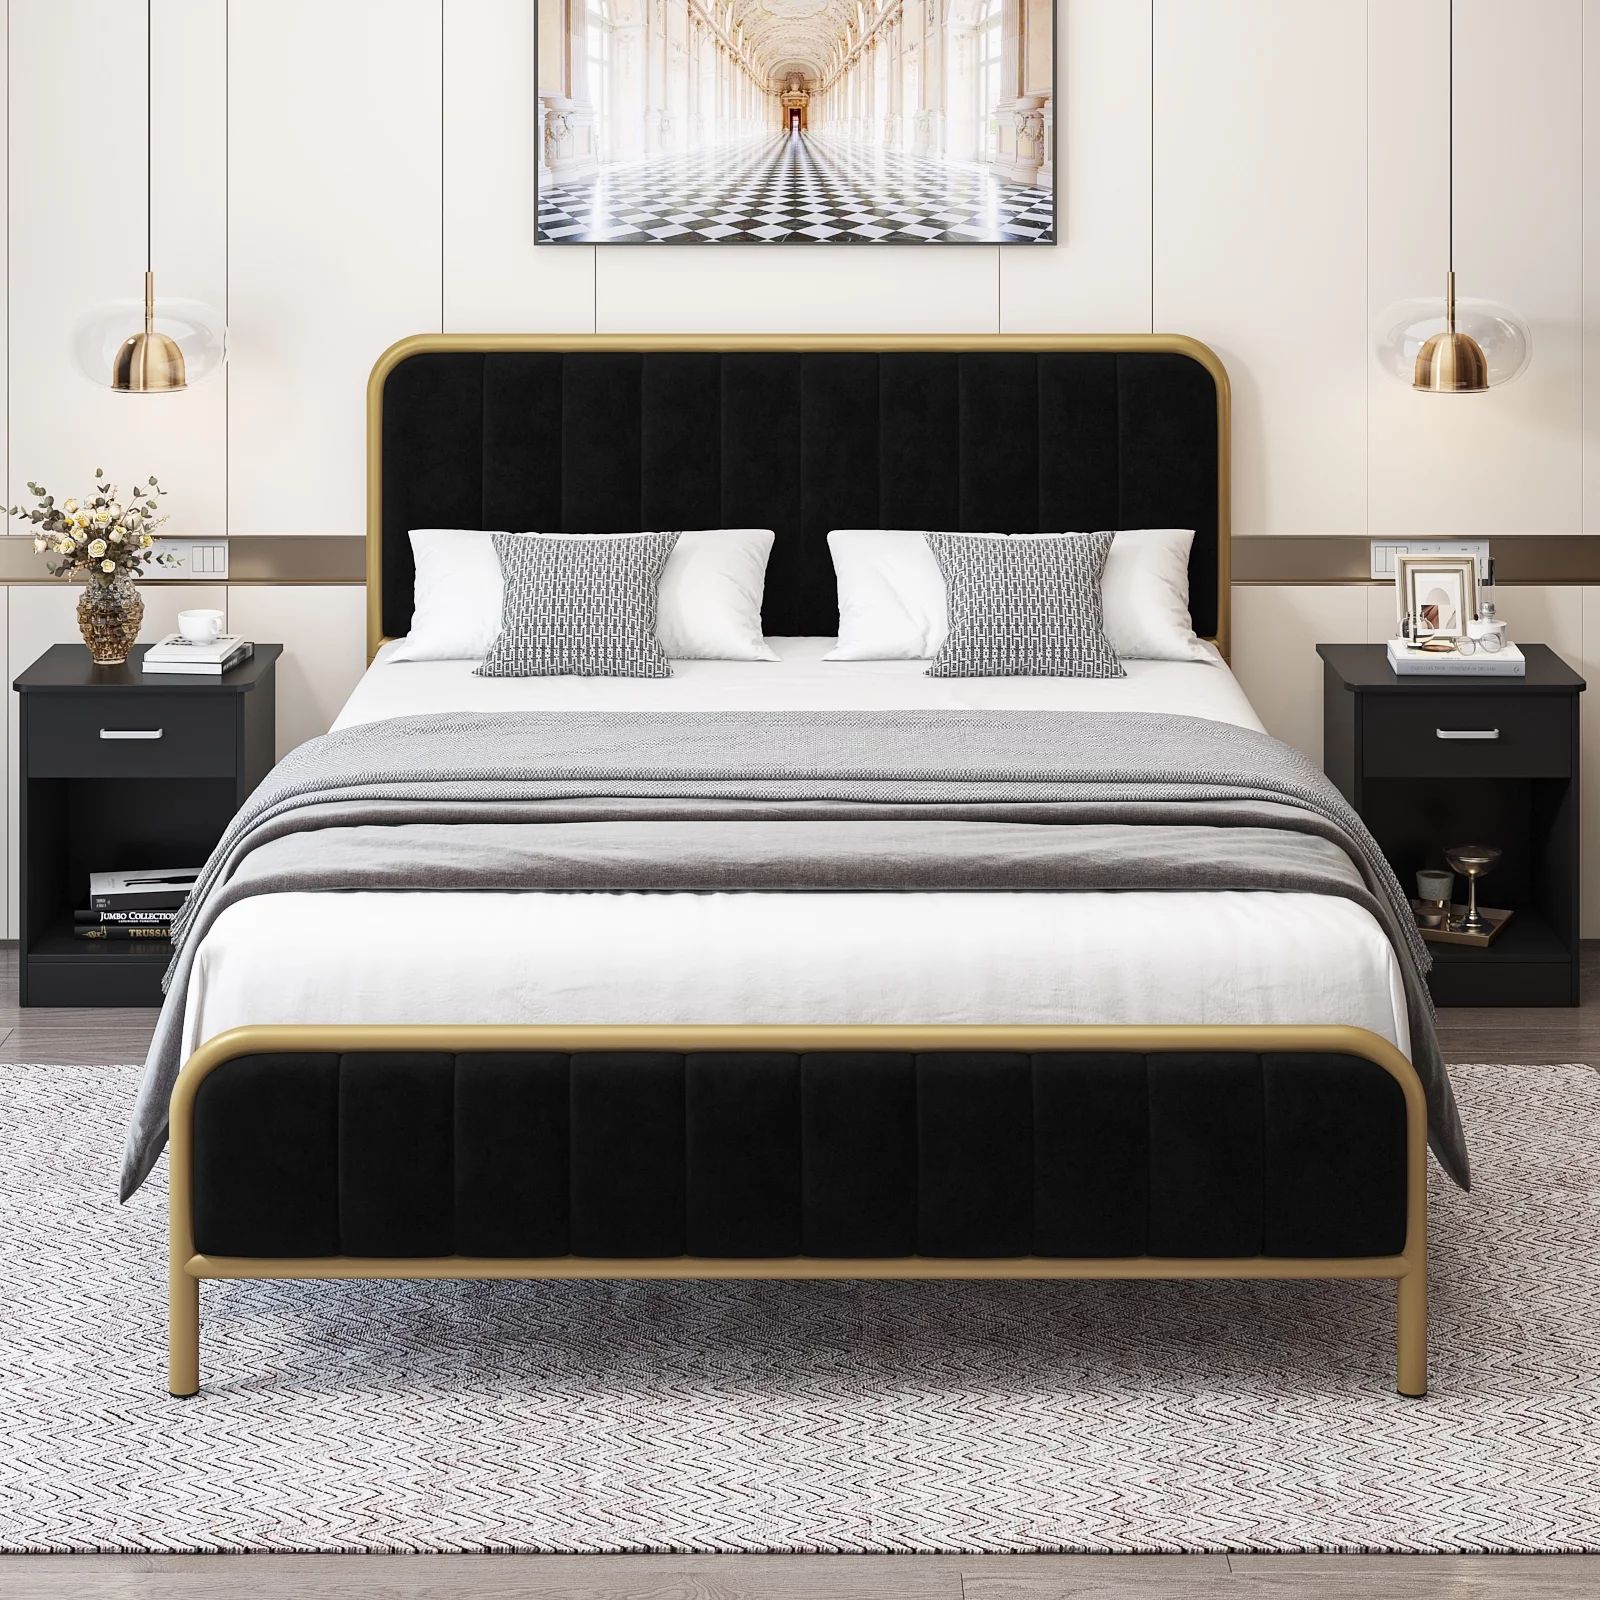 Homfa King Size Bed Frame, Metal Tubular Platform Bed Frame with Upholstered Headboard, Black | Walmart (US)